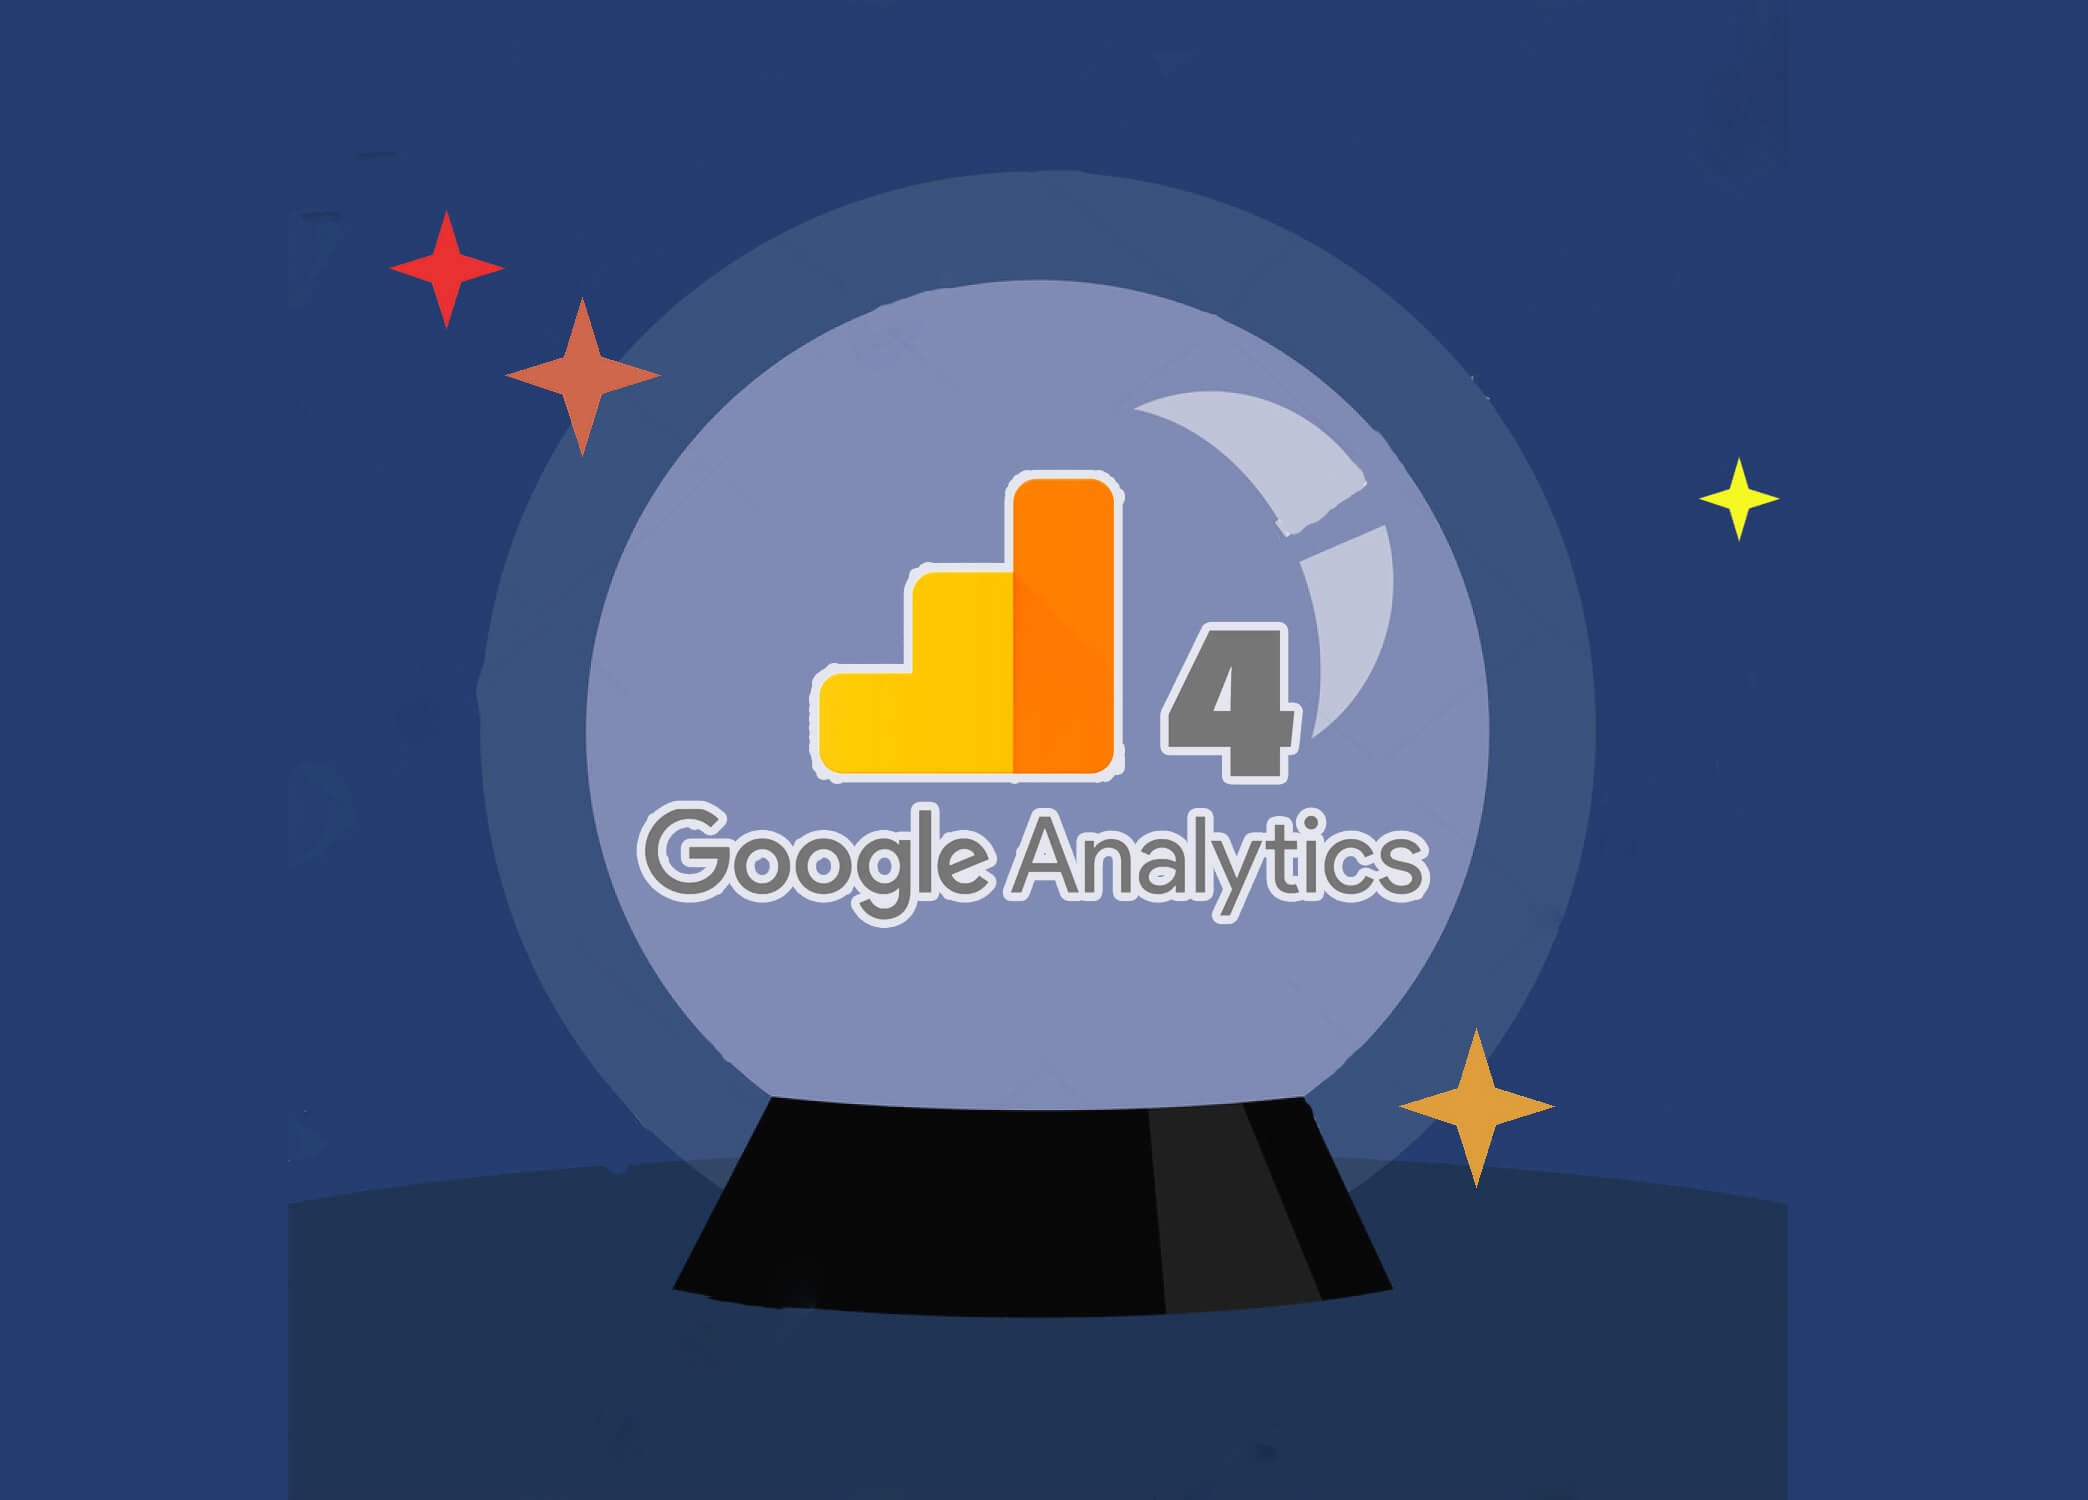 kula-ga4-google-analytics-nowy